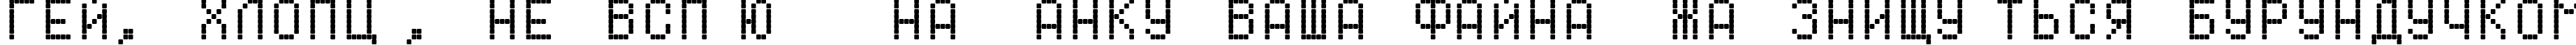 Пример написания шрифтом Dotf1 текста на украинском